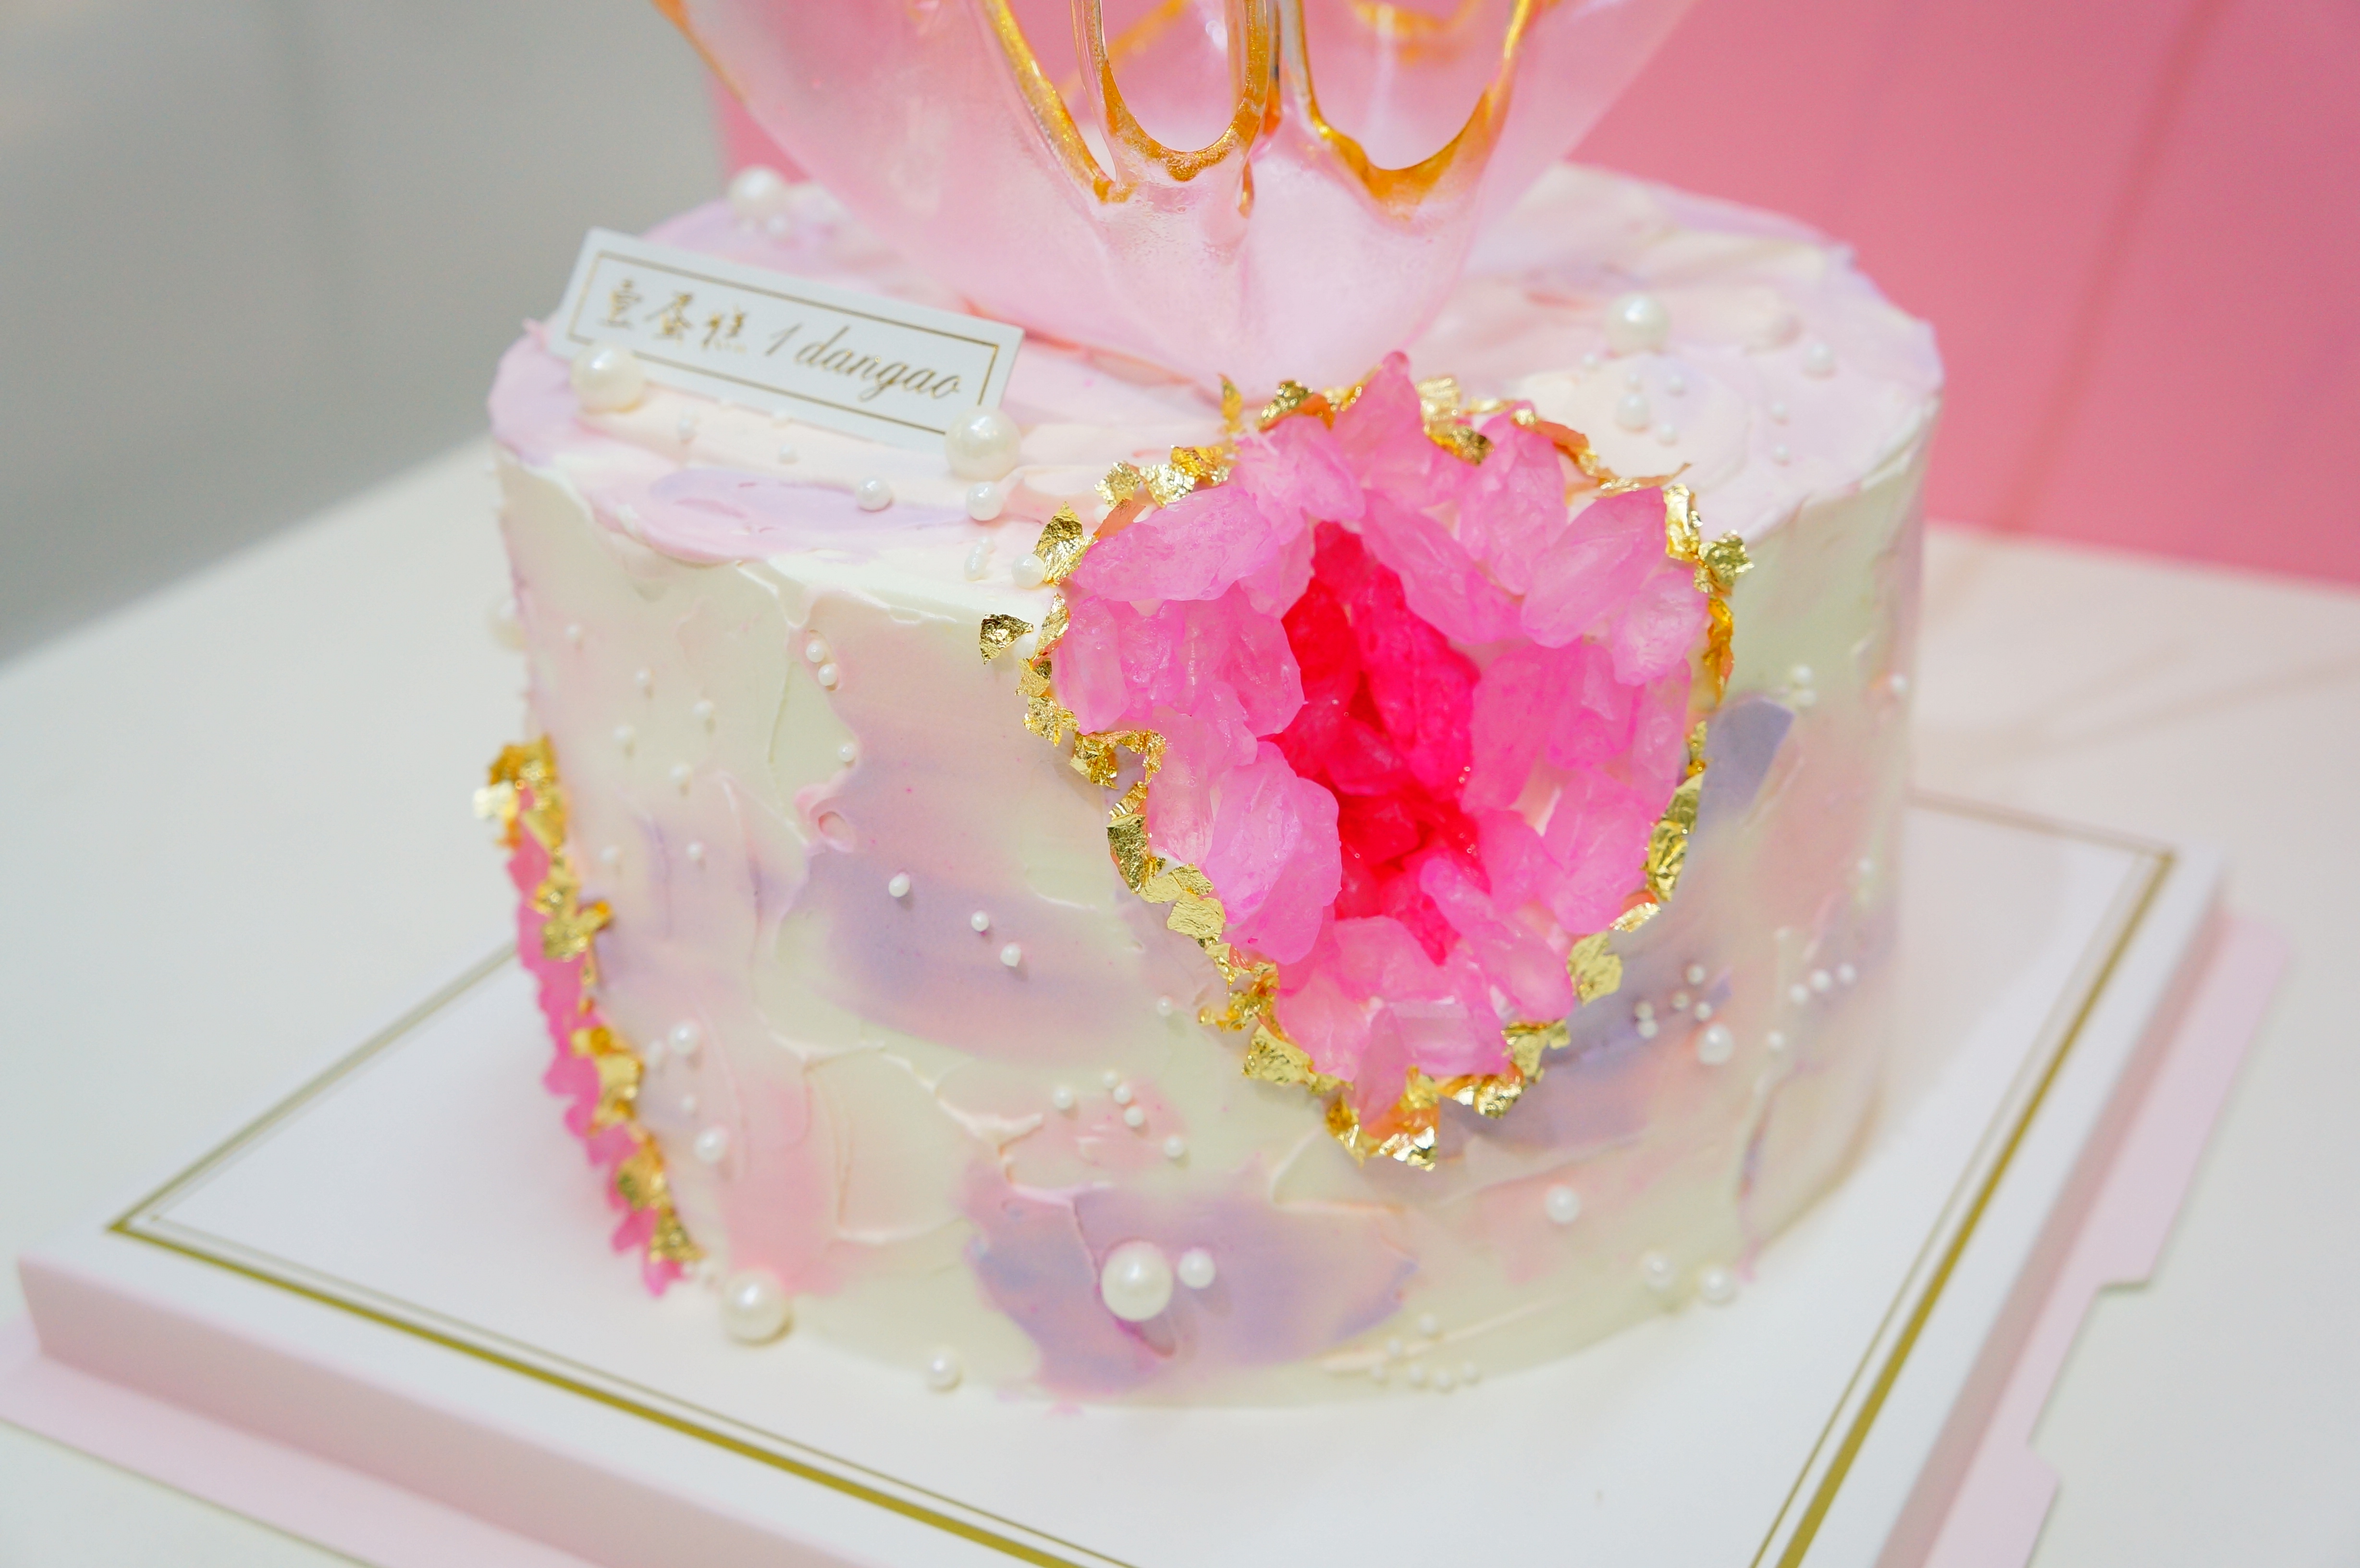 水晶溶洞蛋糕/crystal cave cake